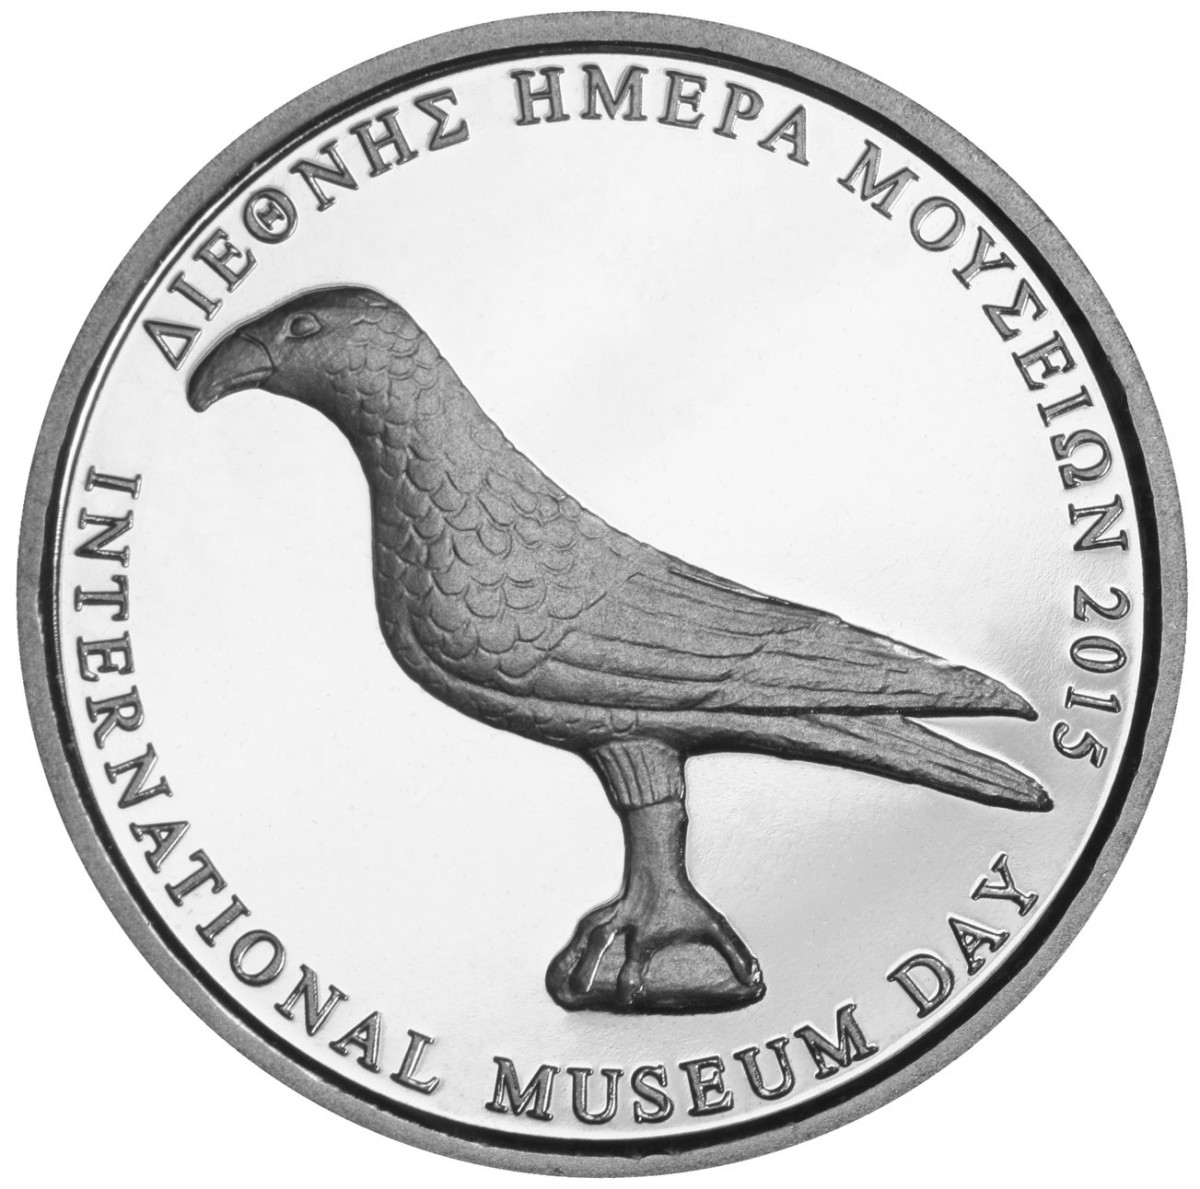 Αναμνηστικό μετάλλιο για τη Διεθνή Ημέρα Μουσείων 2015. © Μουσείο Ακρόπολης.